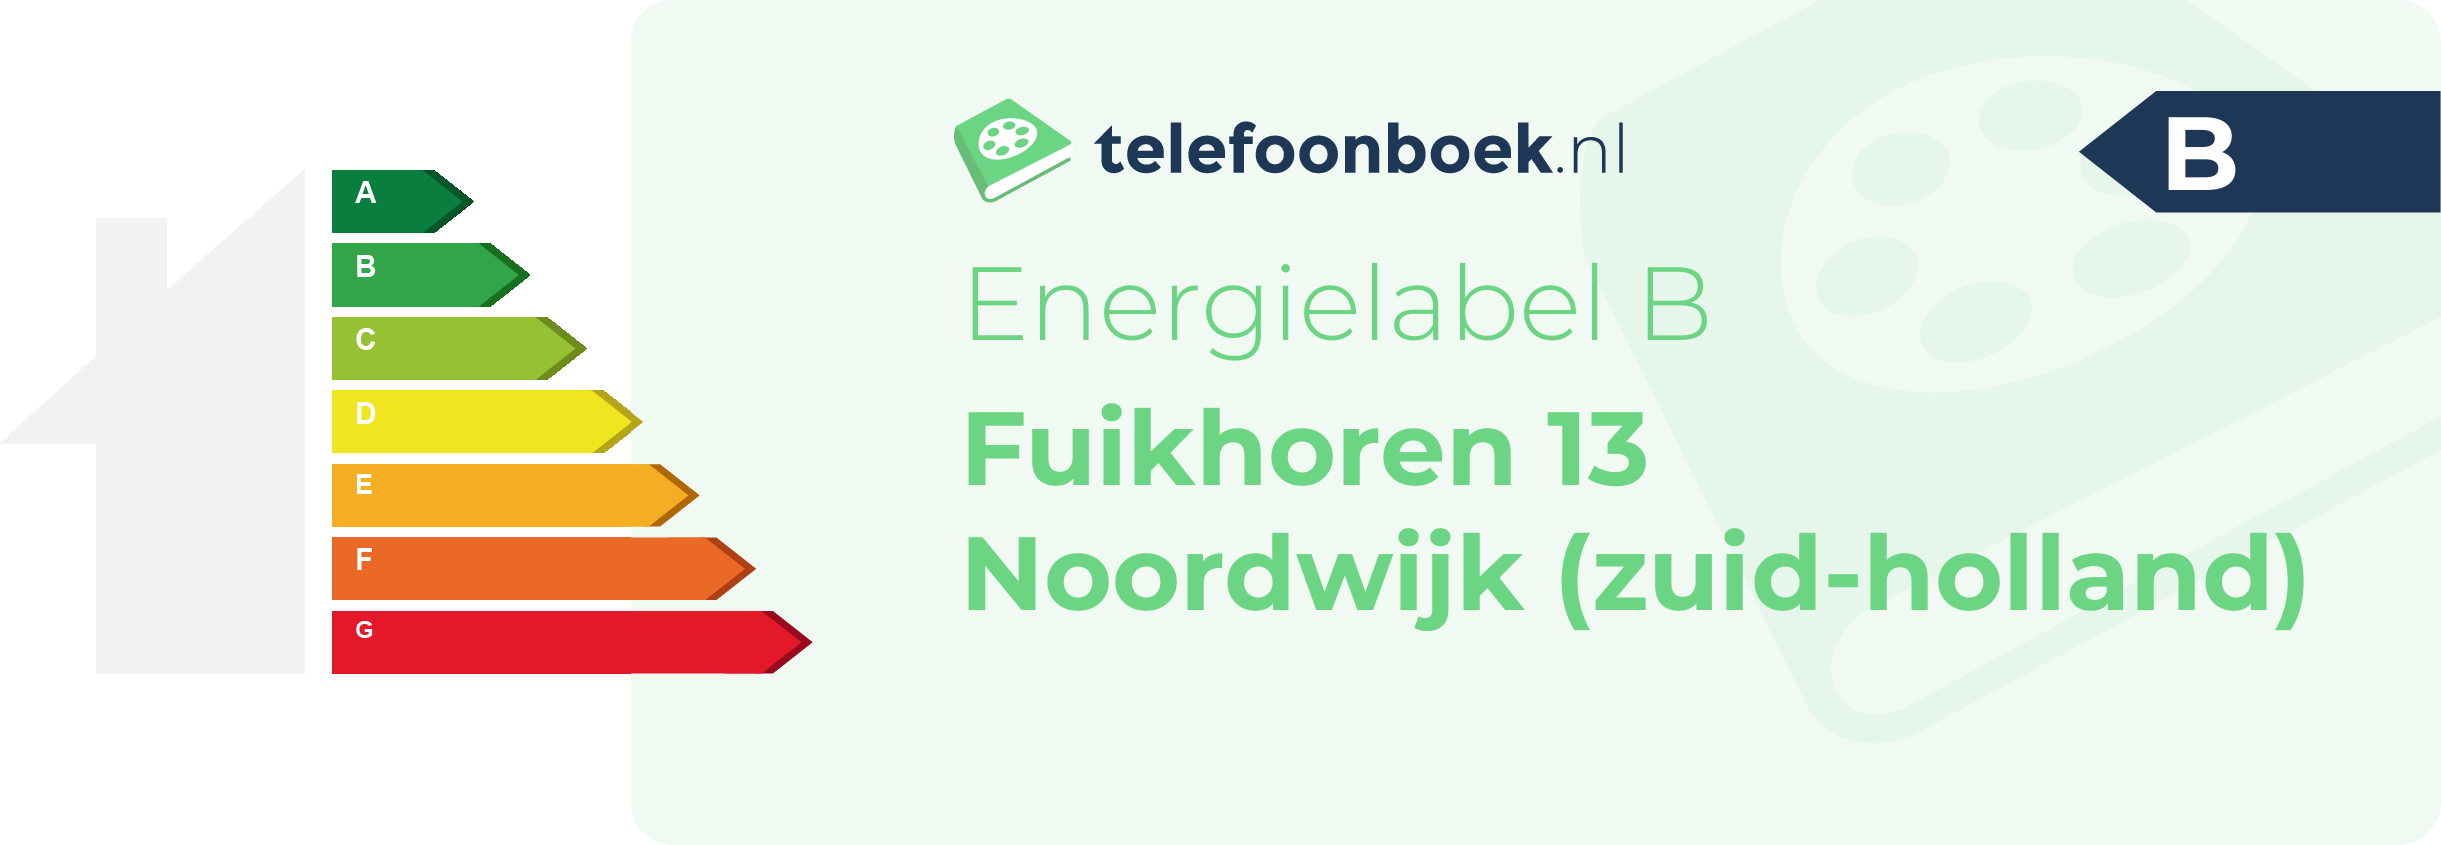 Energielabel Fuikhoren 13 Noordwijk (Zuid-Holland)